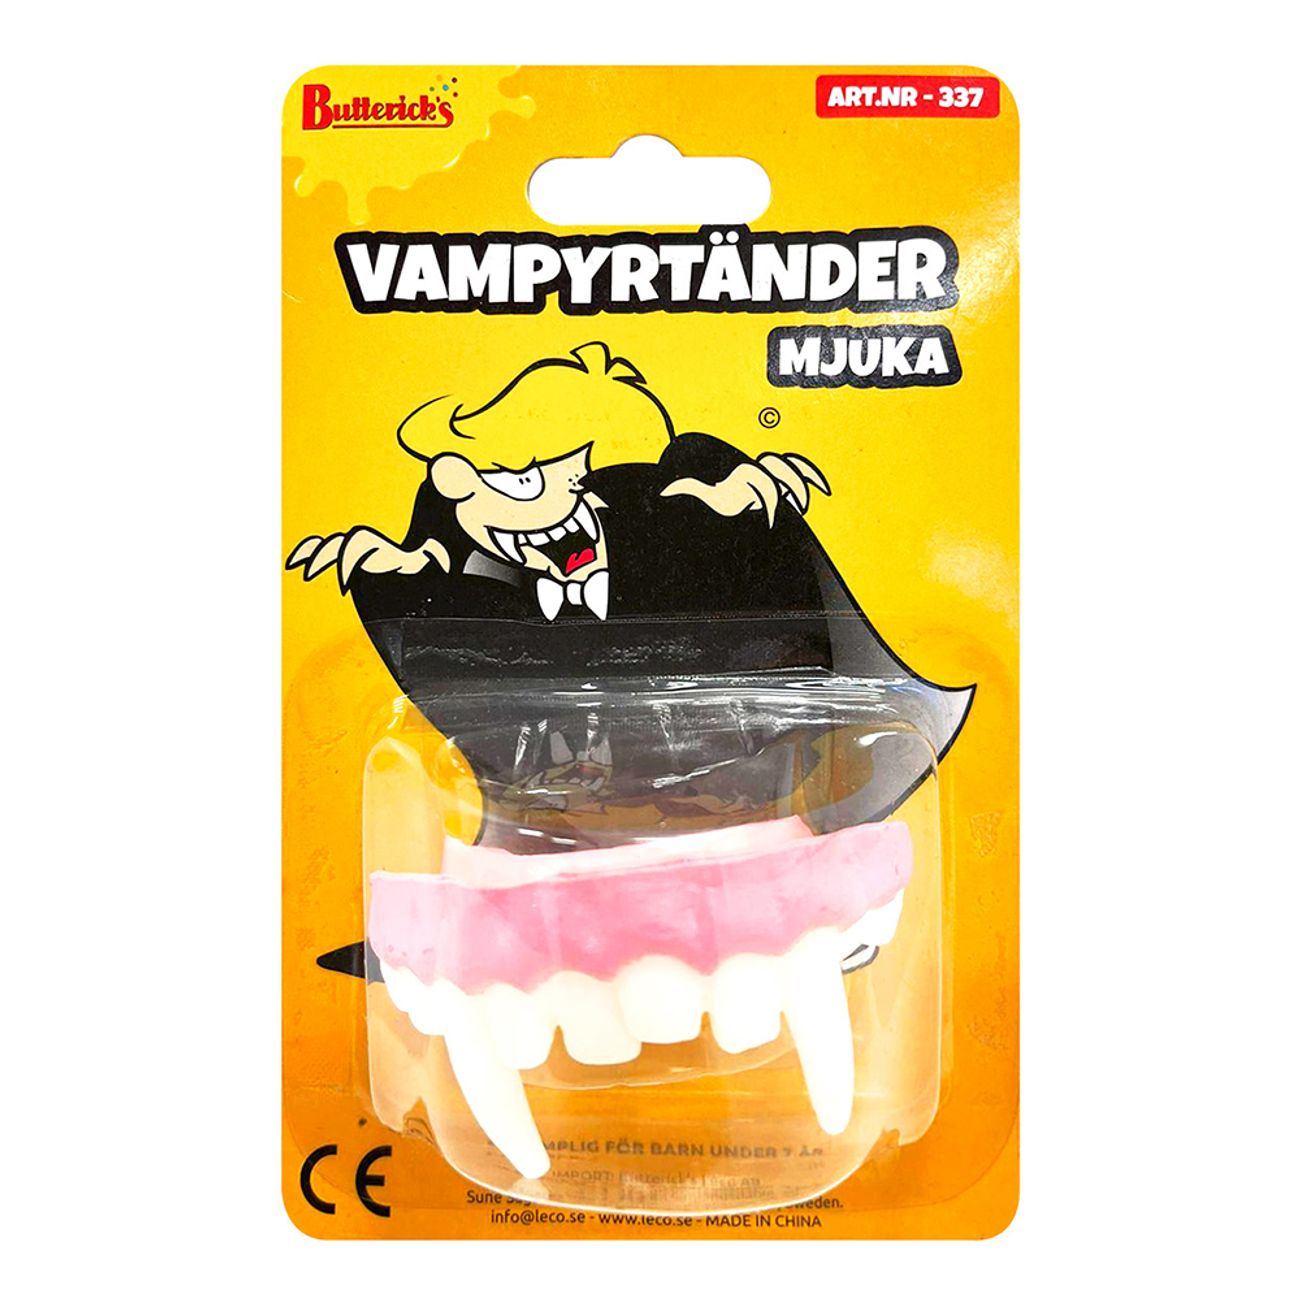 lostander-vampyr-mjuka-77720-1